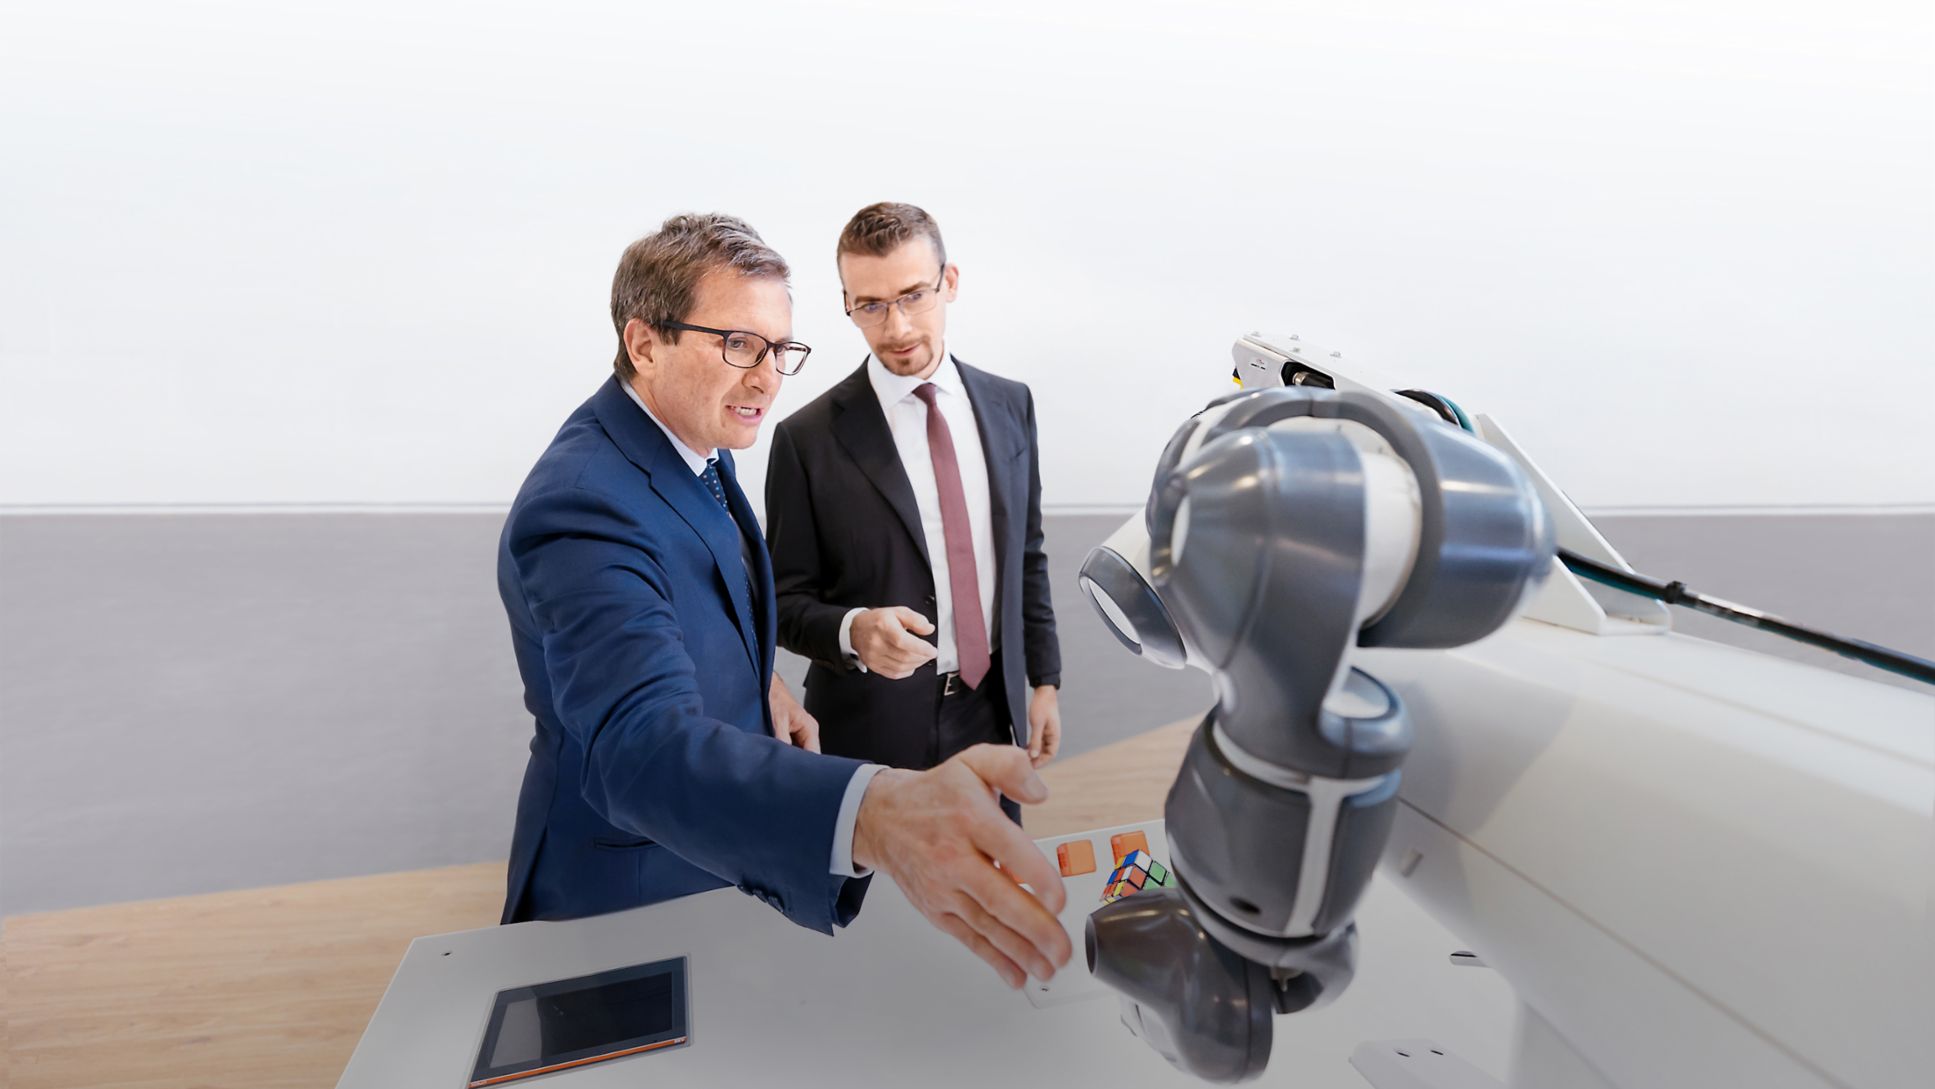 Leonardo Leani, Division Manager Robotics & Discrete Automation bei ABB (links), und Claudio Brusatori, Partner bei Porsche Consulting Italia, 2022, Porsche Consulting